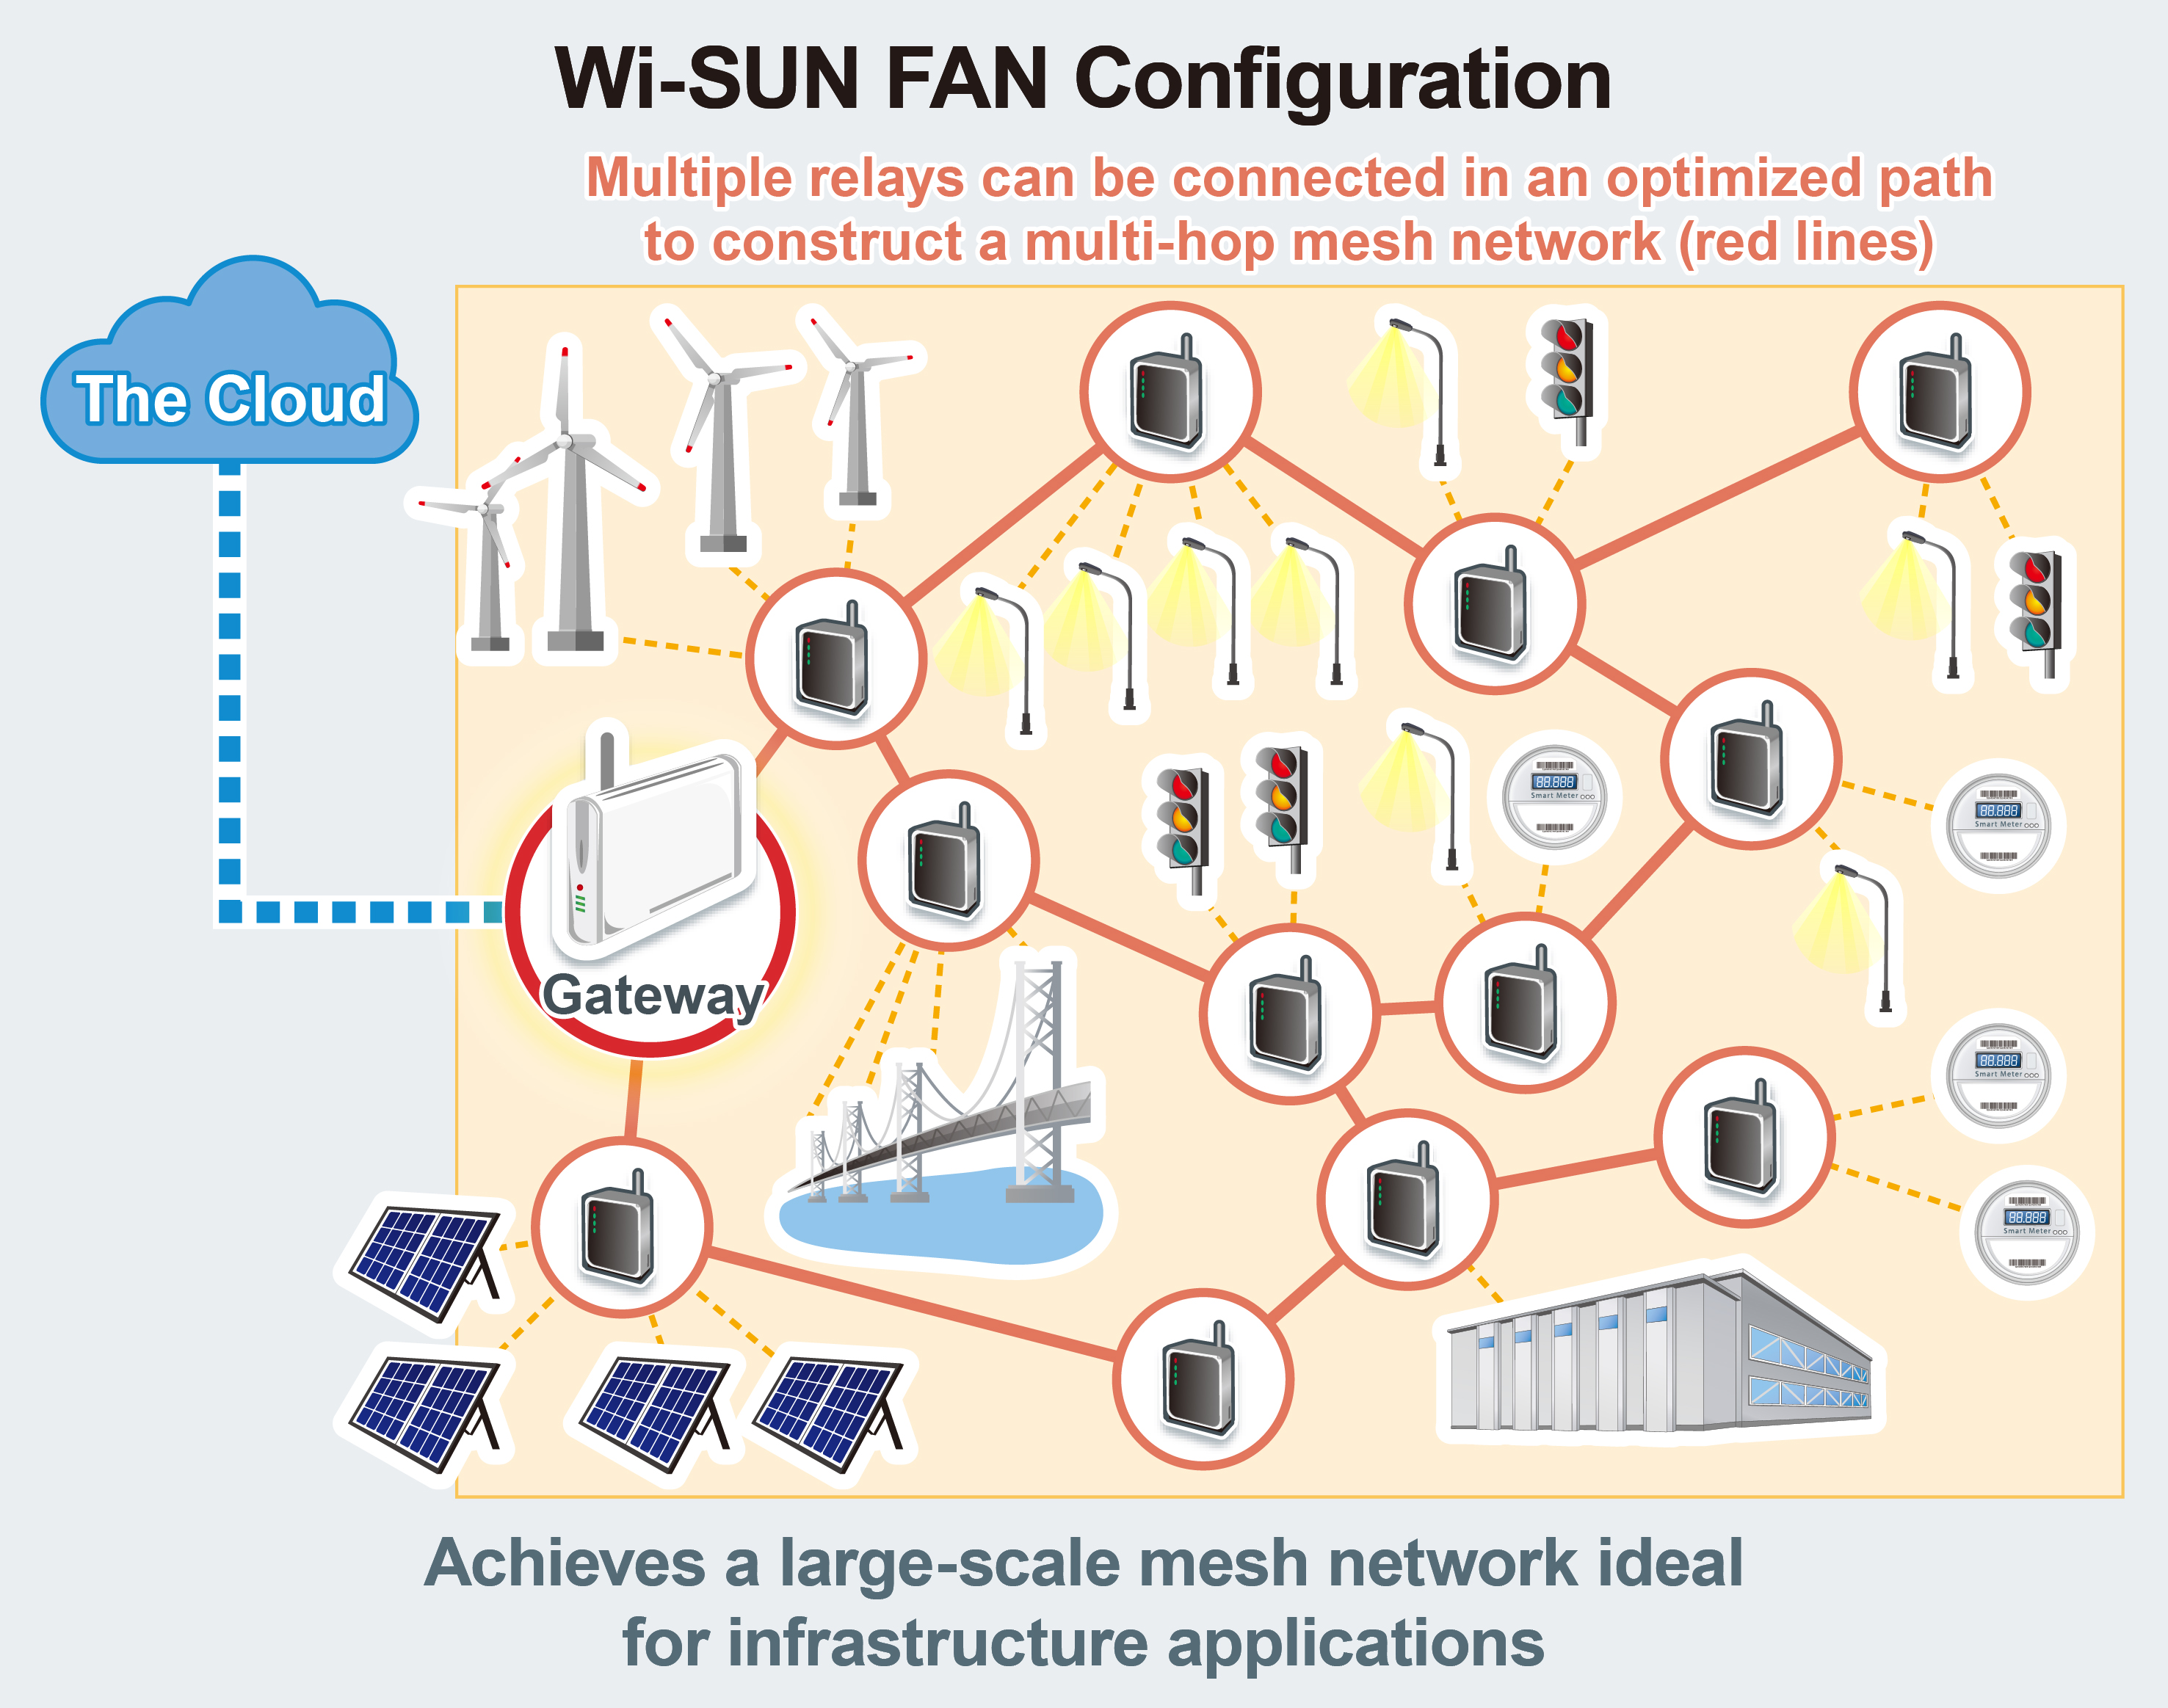 Wi-SUN FAN